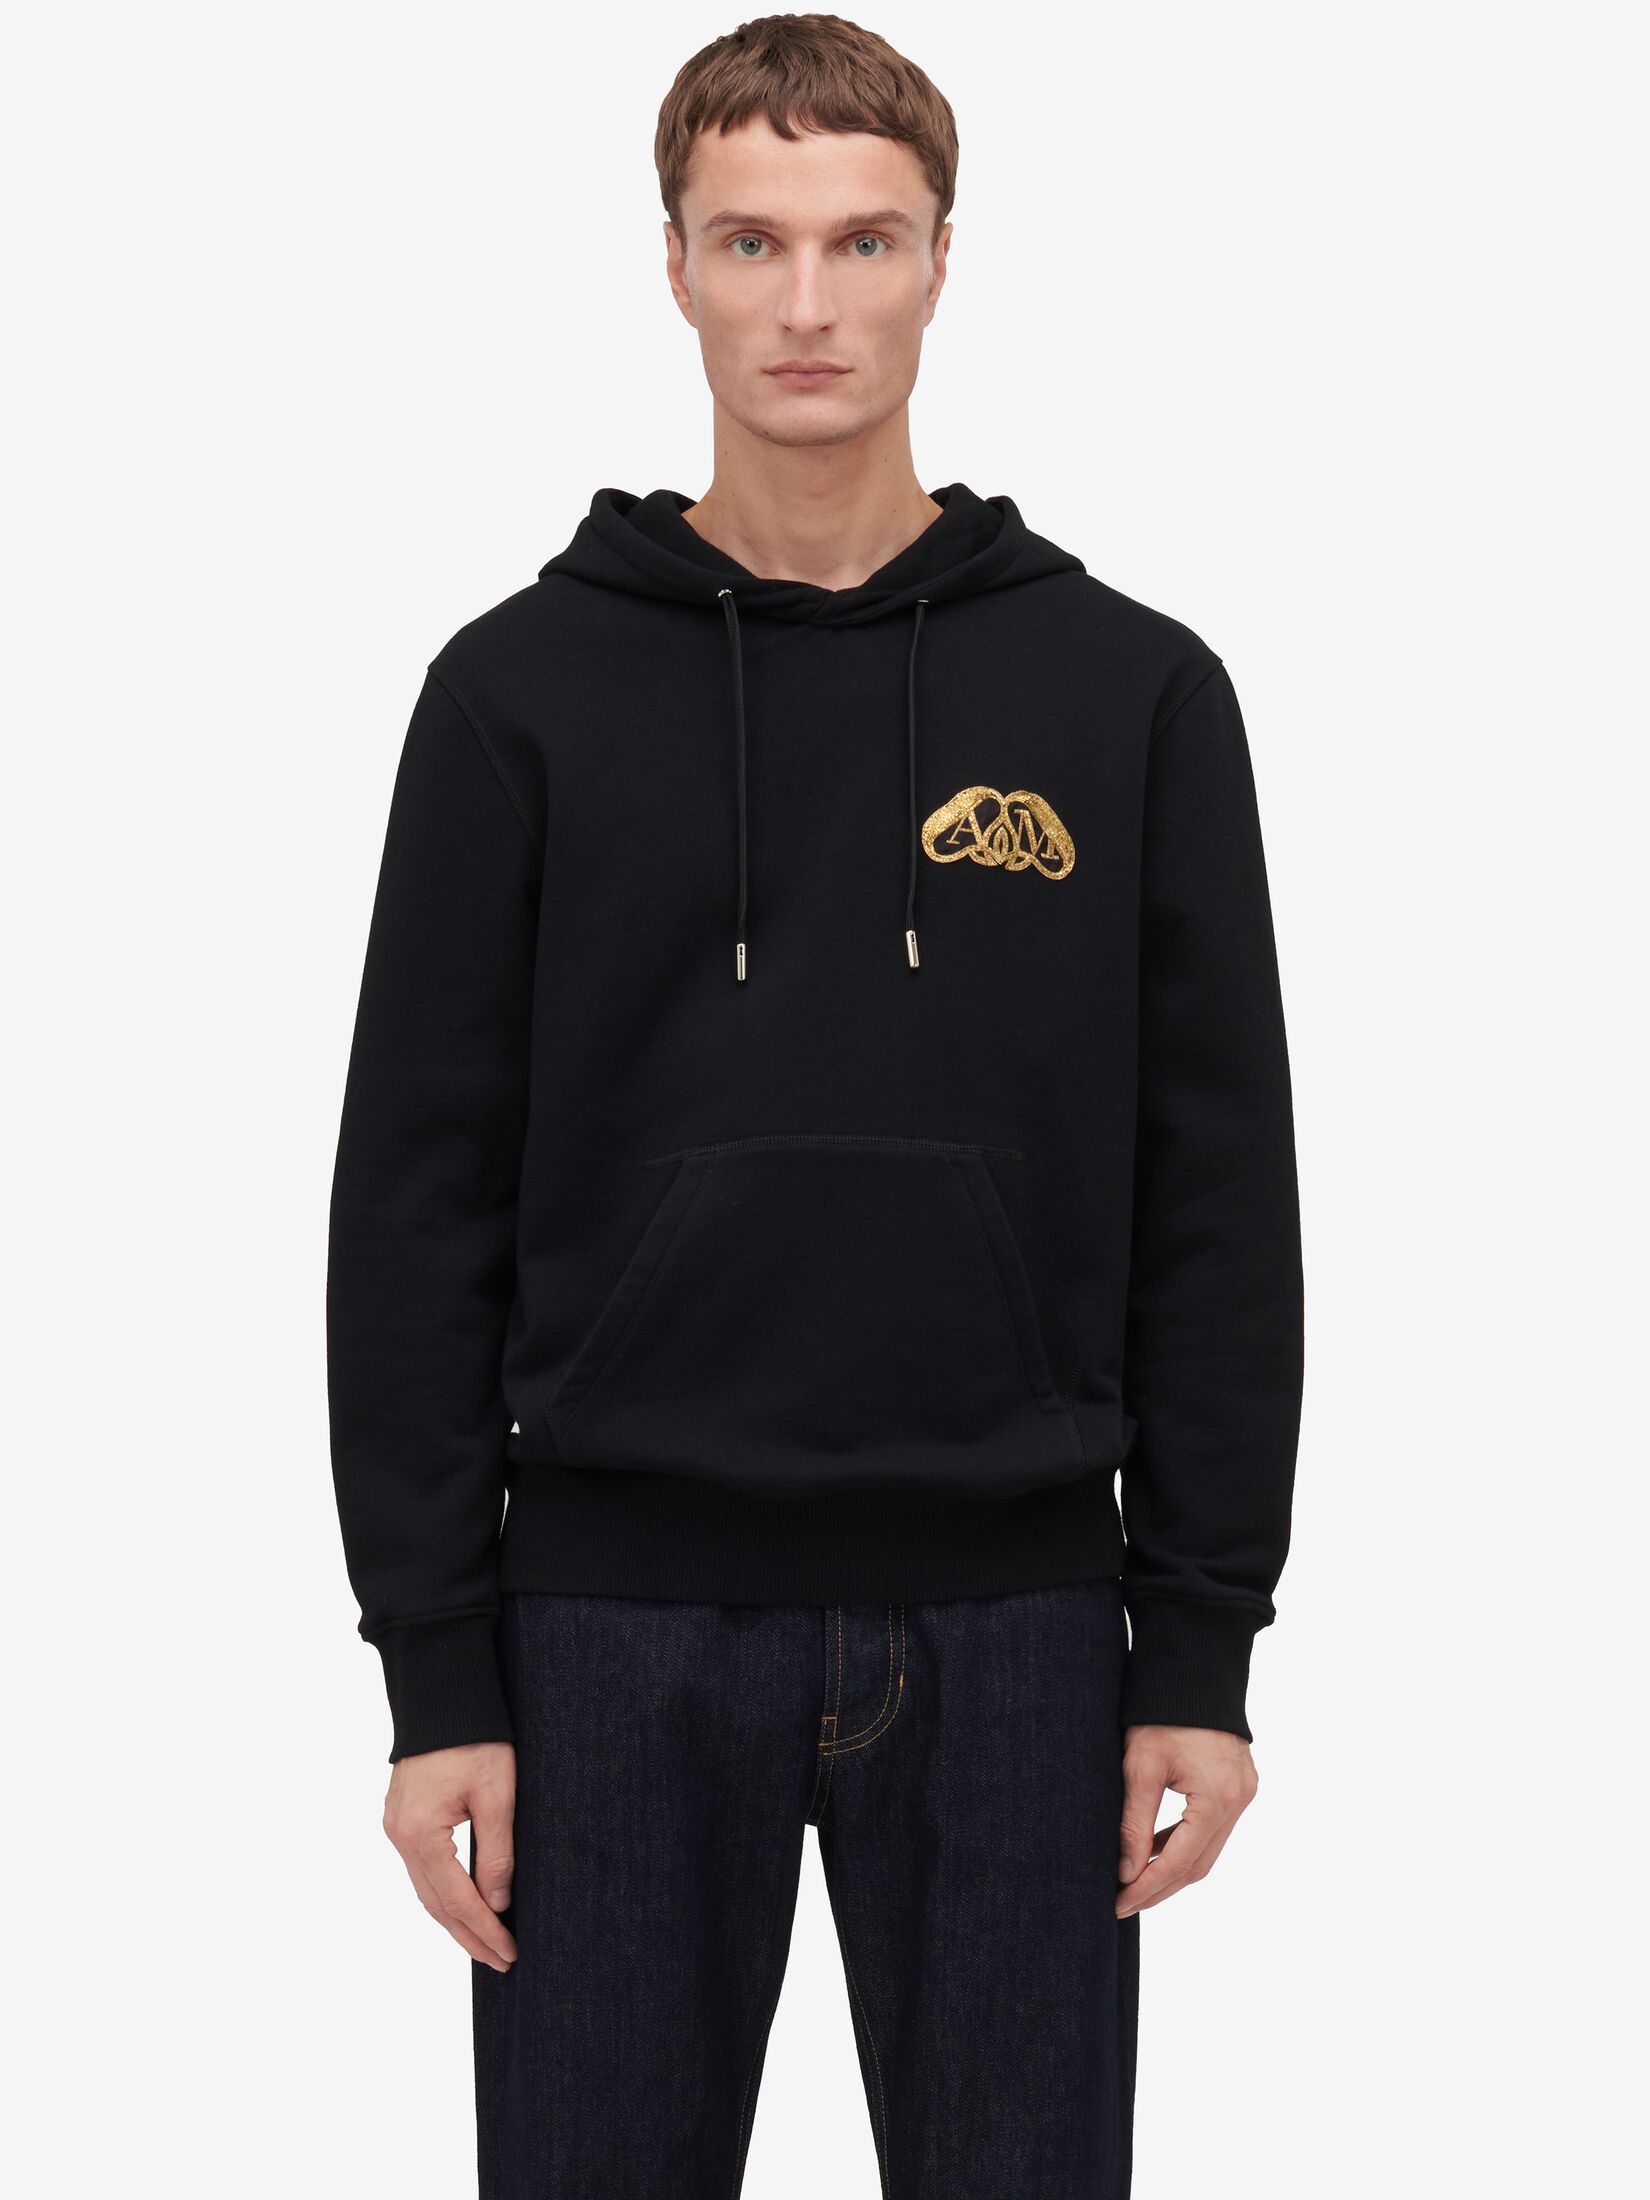 Half Seal Logo Hooded Sweatshirt in Black | Alexander McQueen US